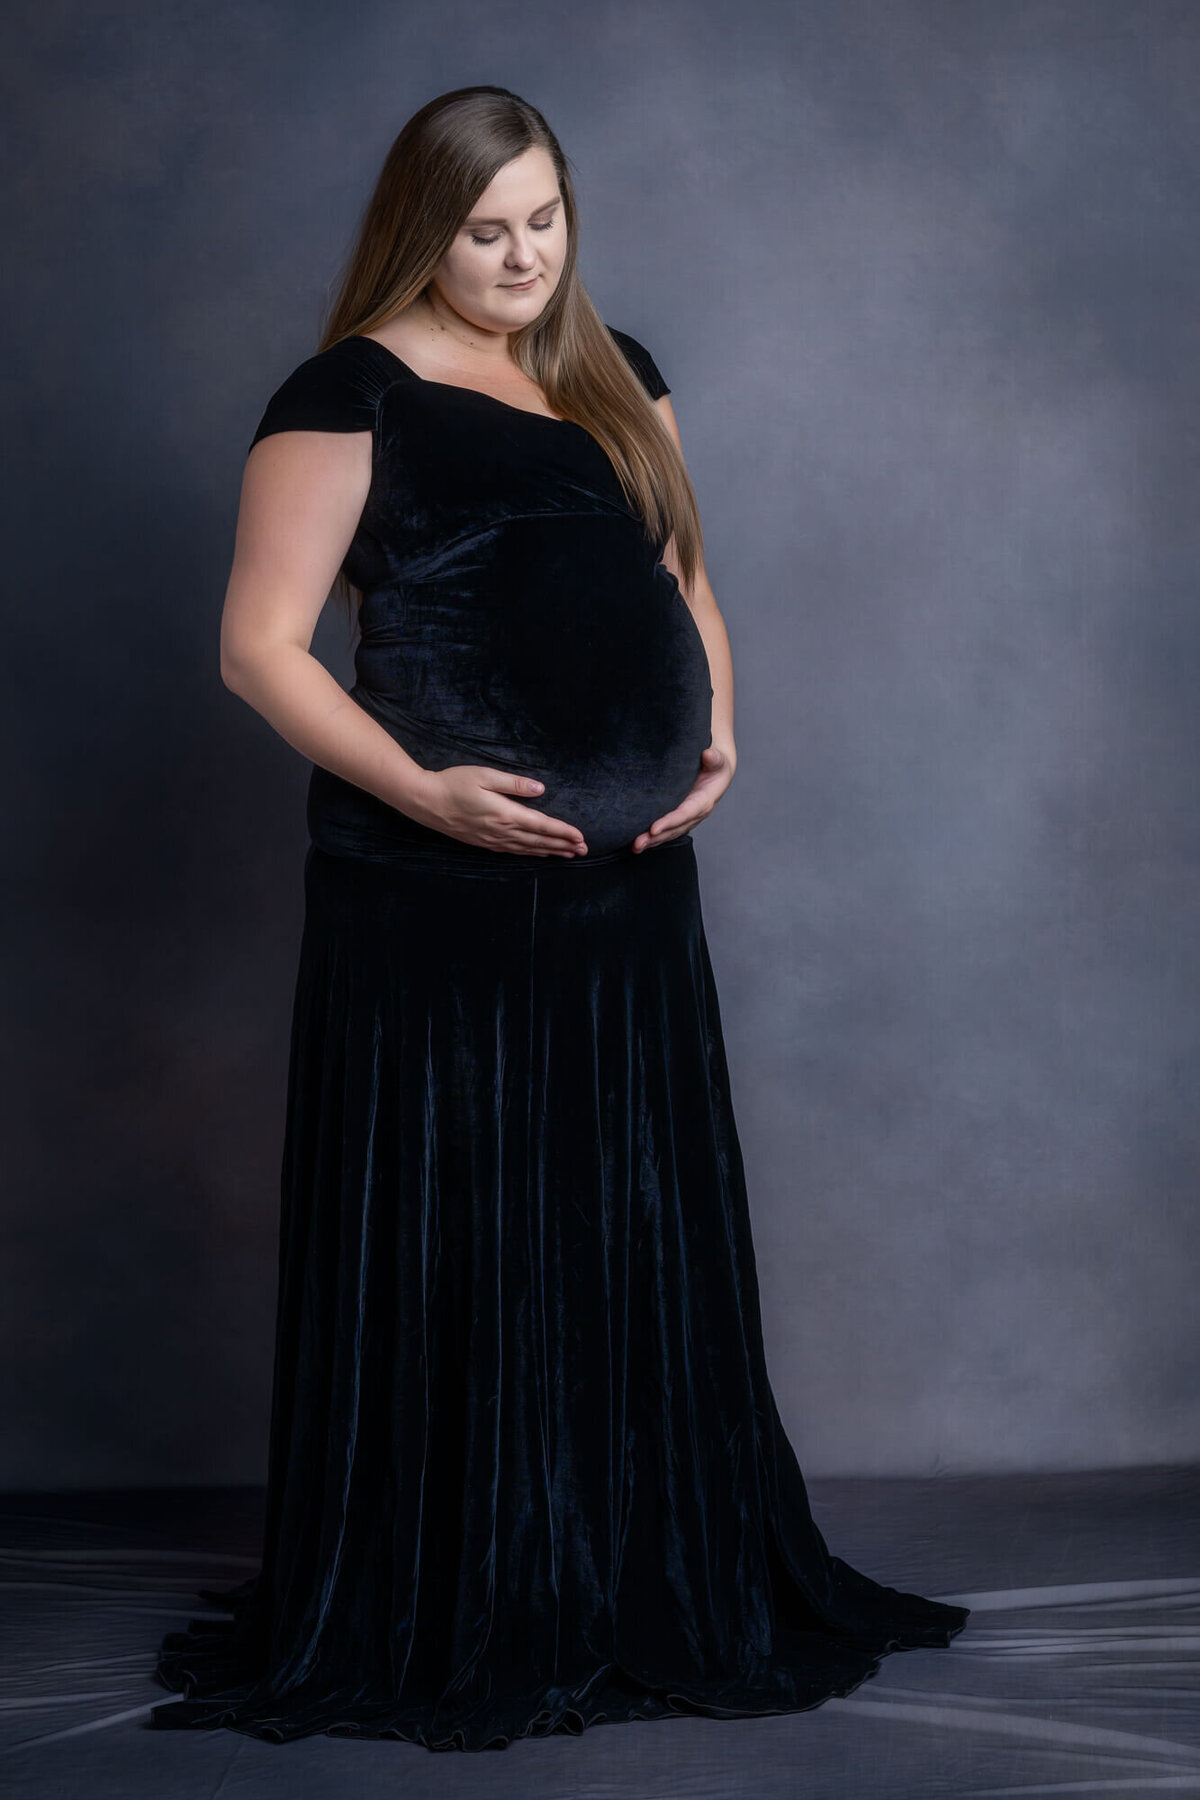 prescott-az-maternity-photographer-86